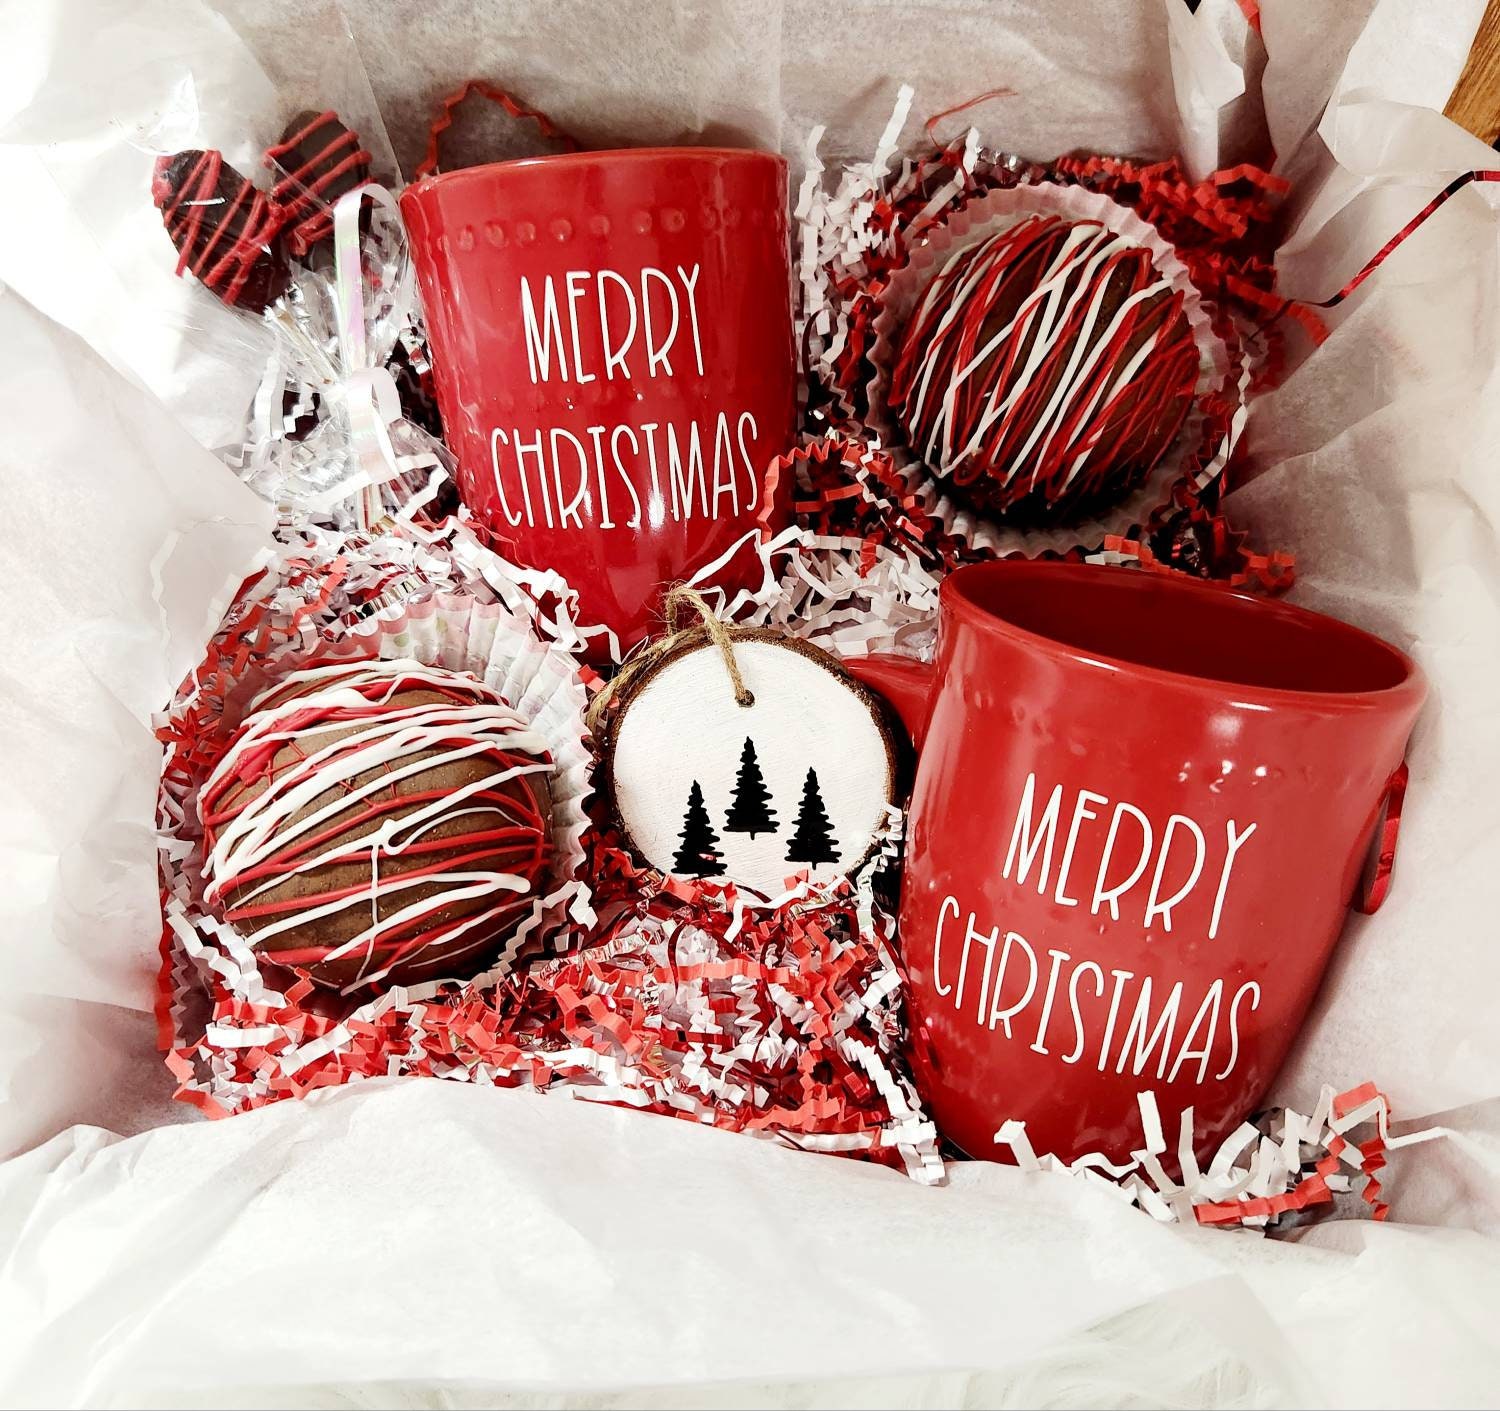 Hot Chocolate Bomb & Pottery Mug Gift Set – Meringue Bakery & Cafe